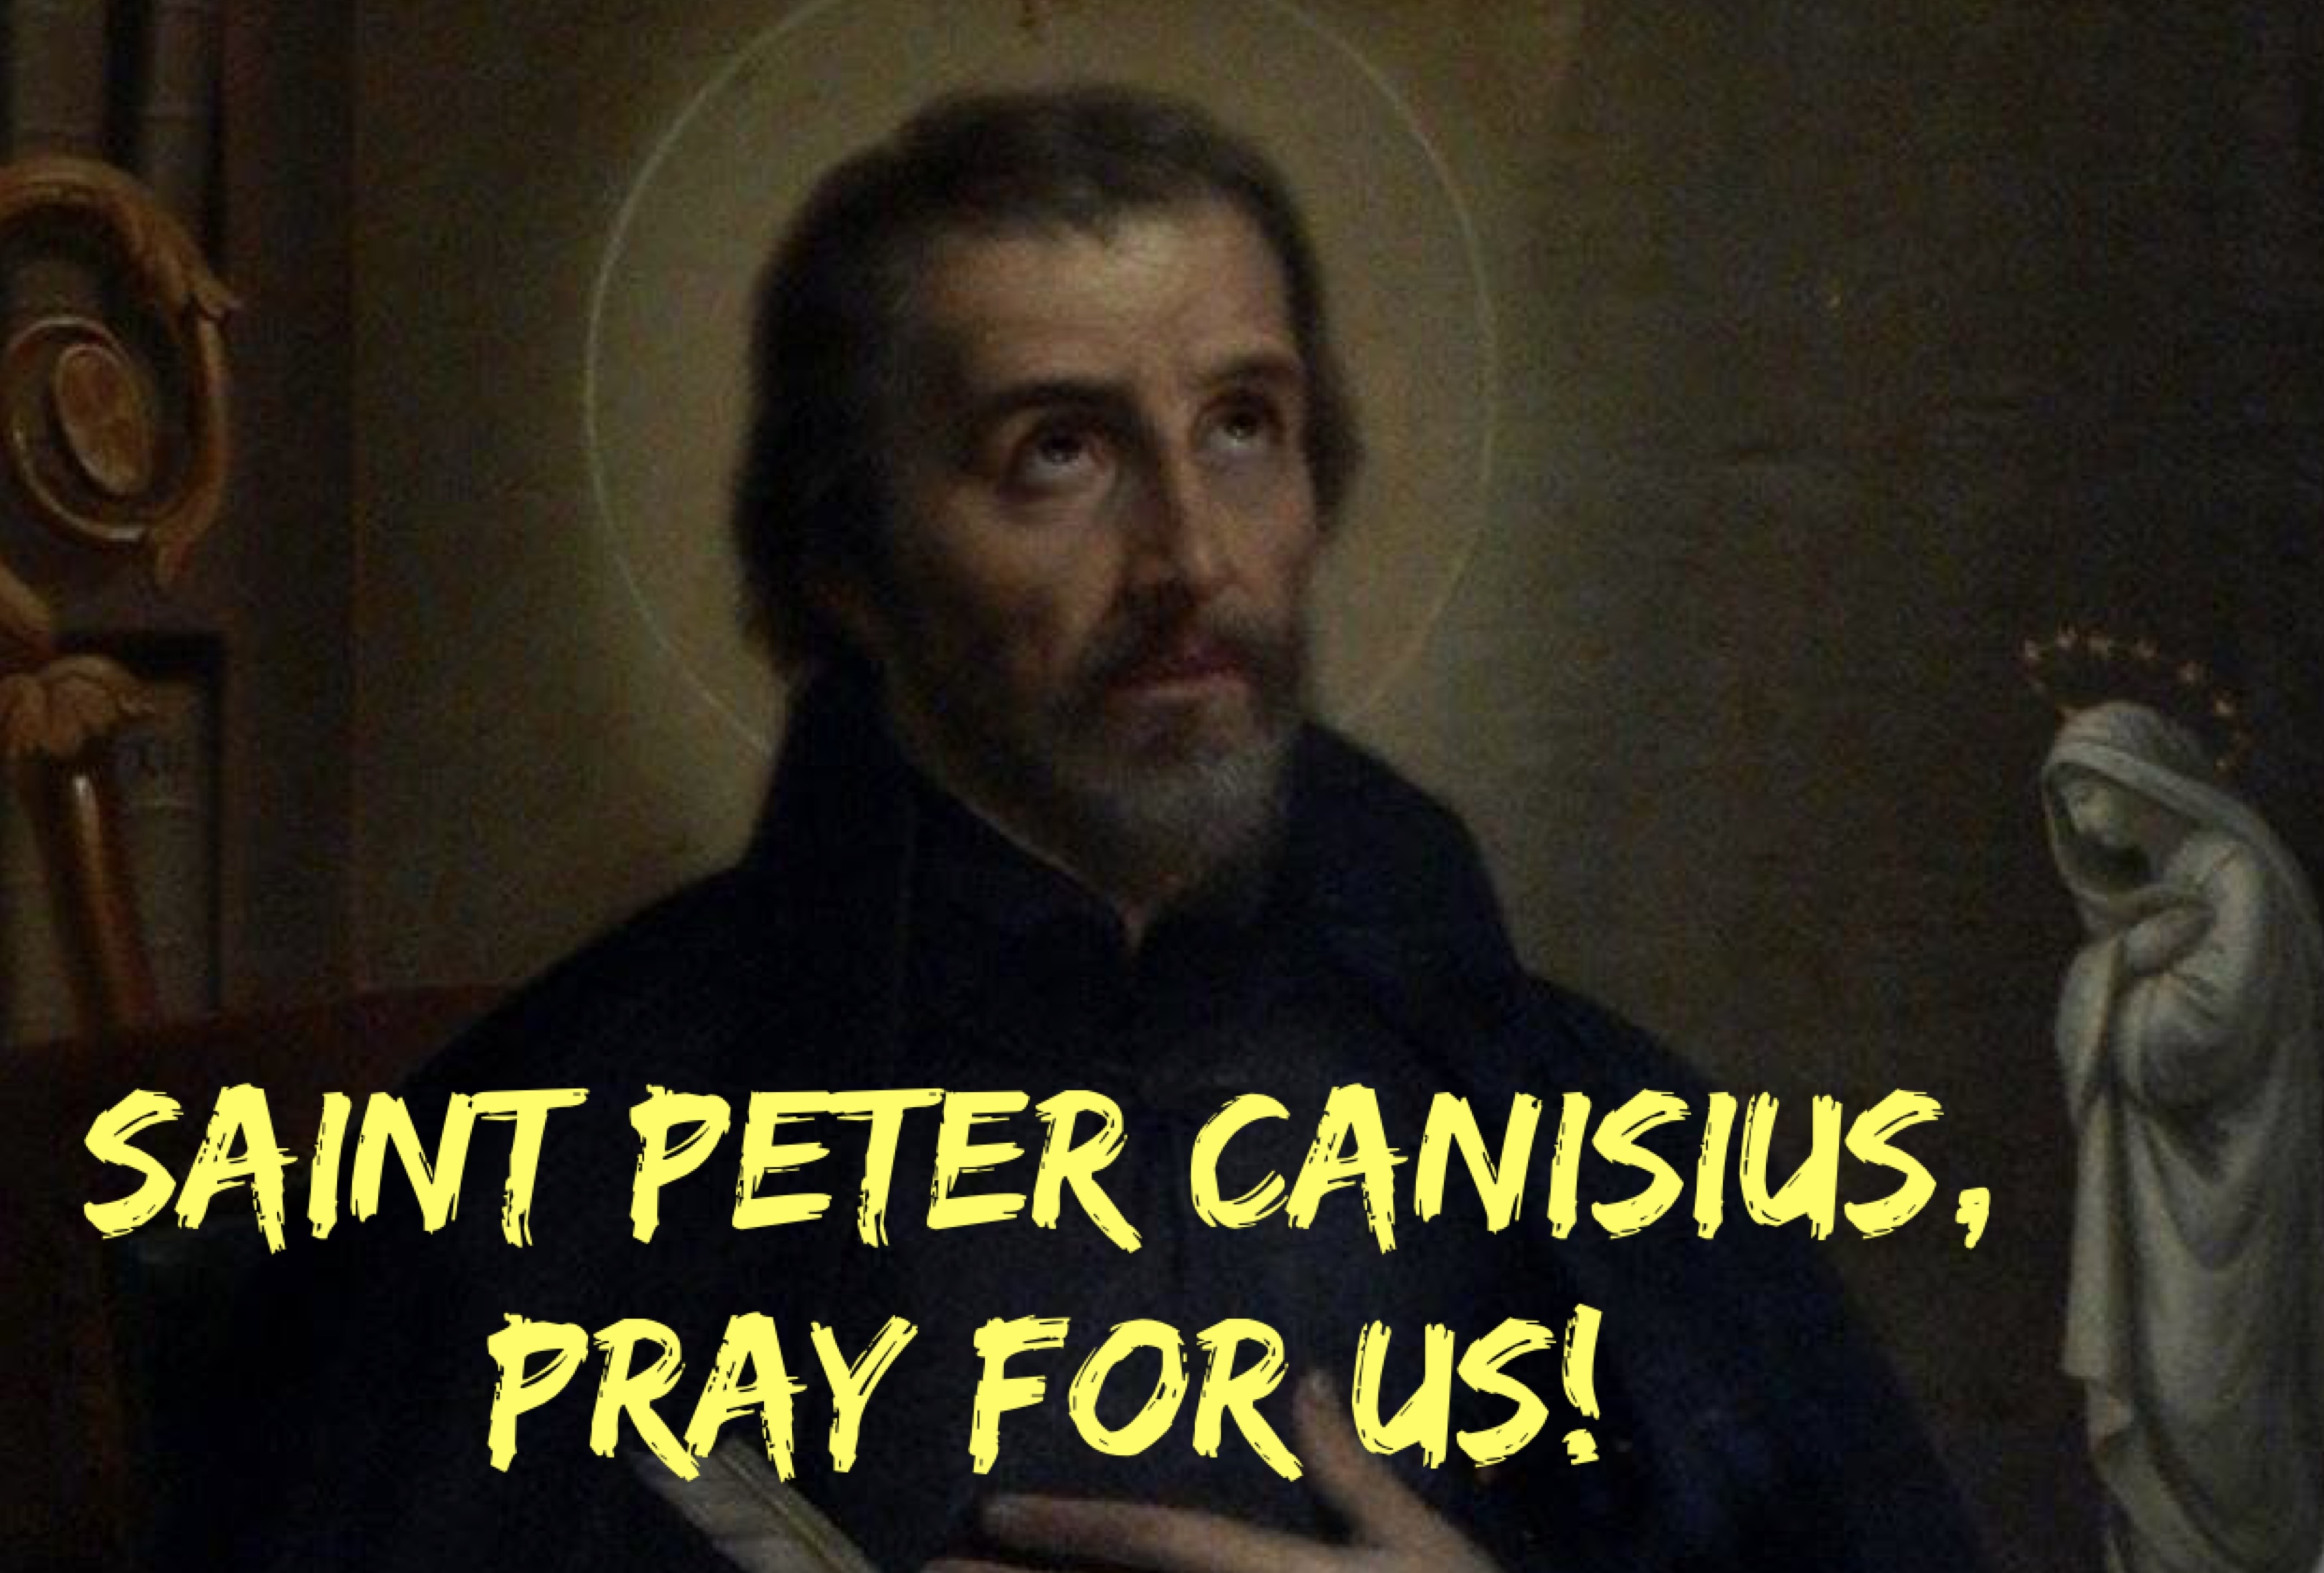 21st December – Saint Peter Canisius